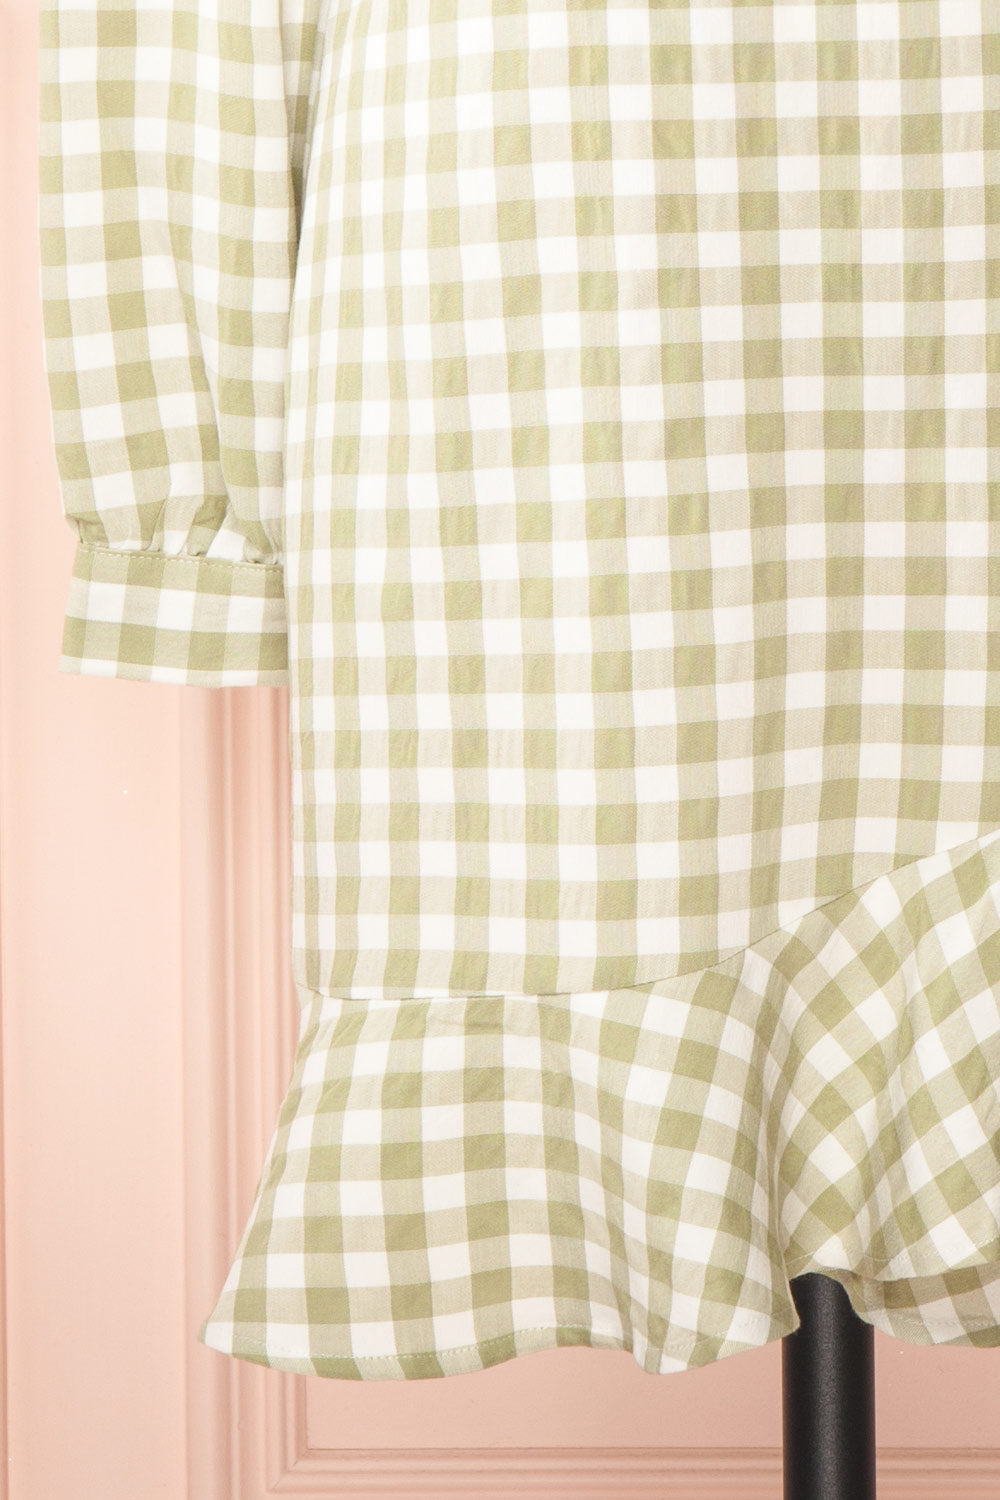 Grutha Green Long Sleeve Short Gingham Dress w/ Ruffles | Boutique 1861 bottom